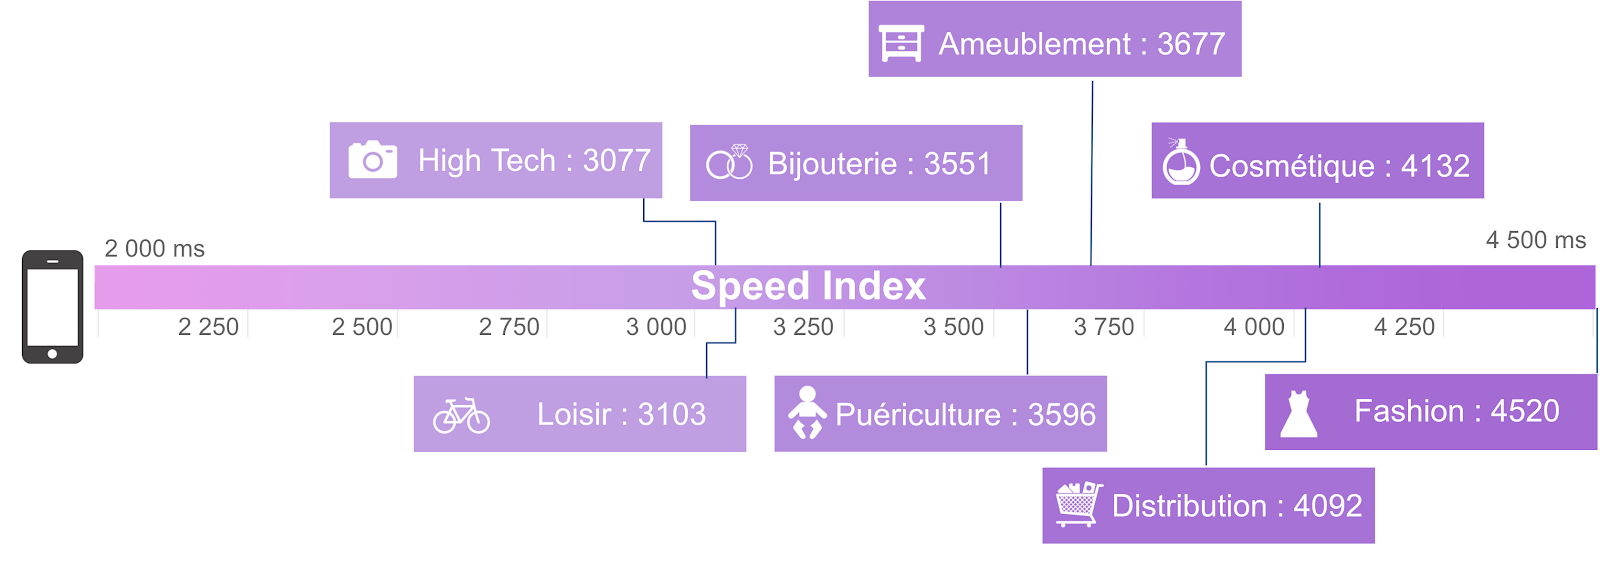 Speed Index median pour les sites web Ecommerce Retail